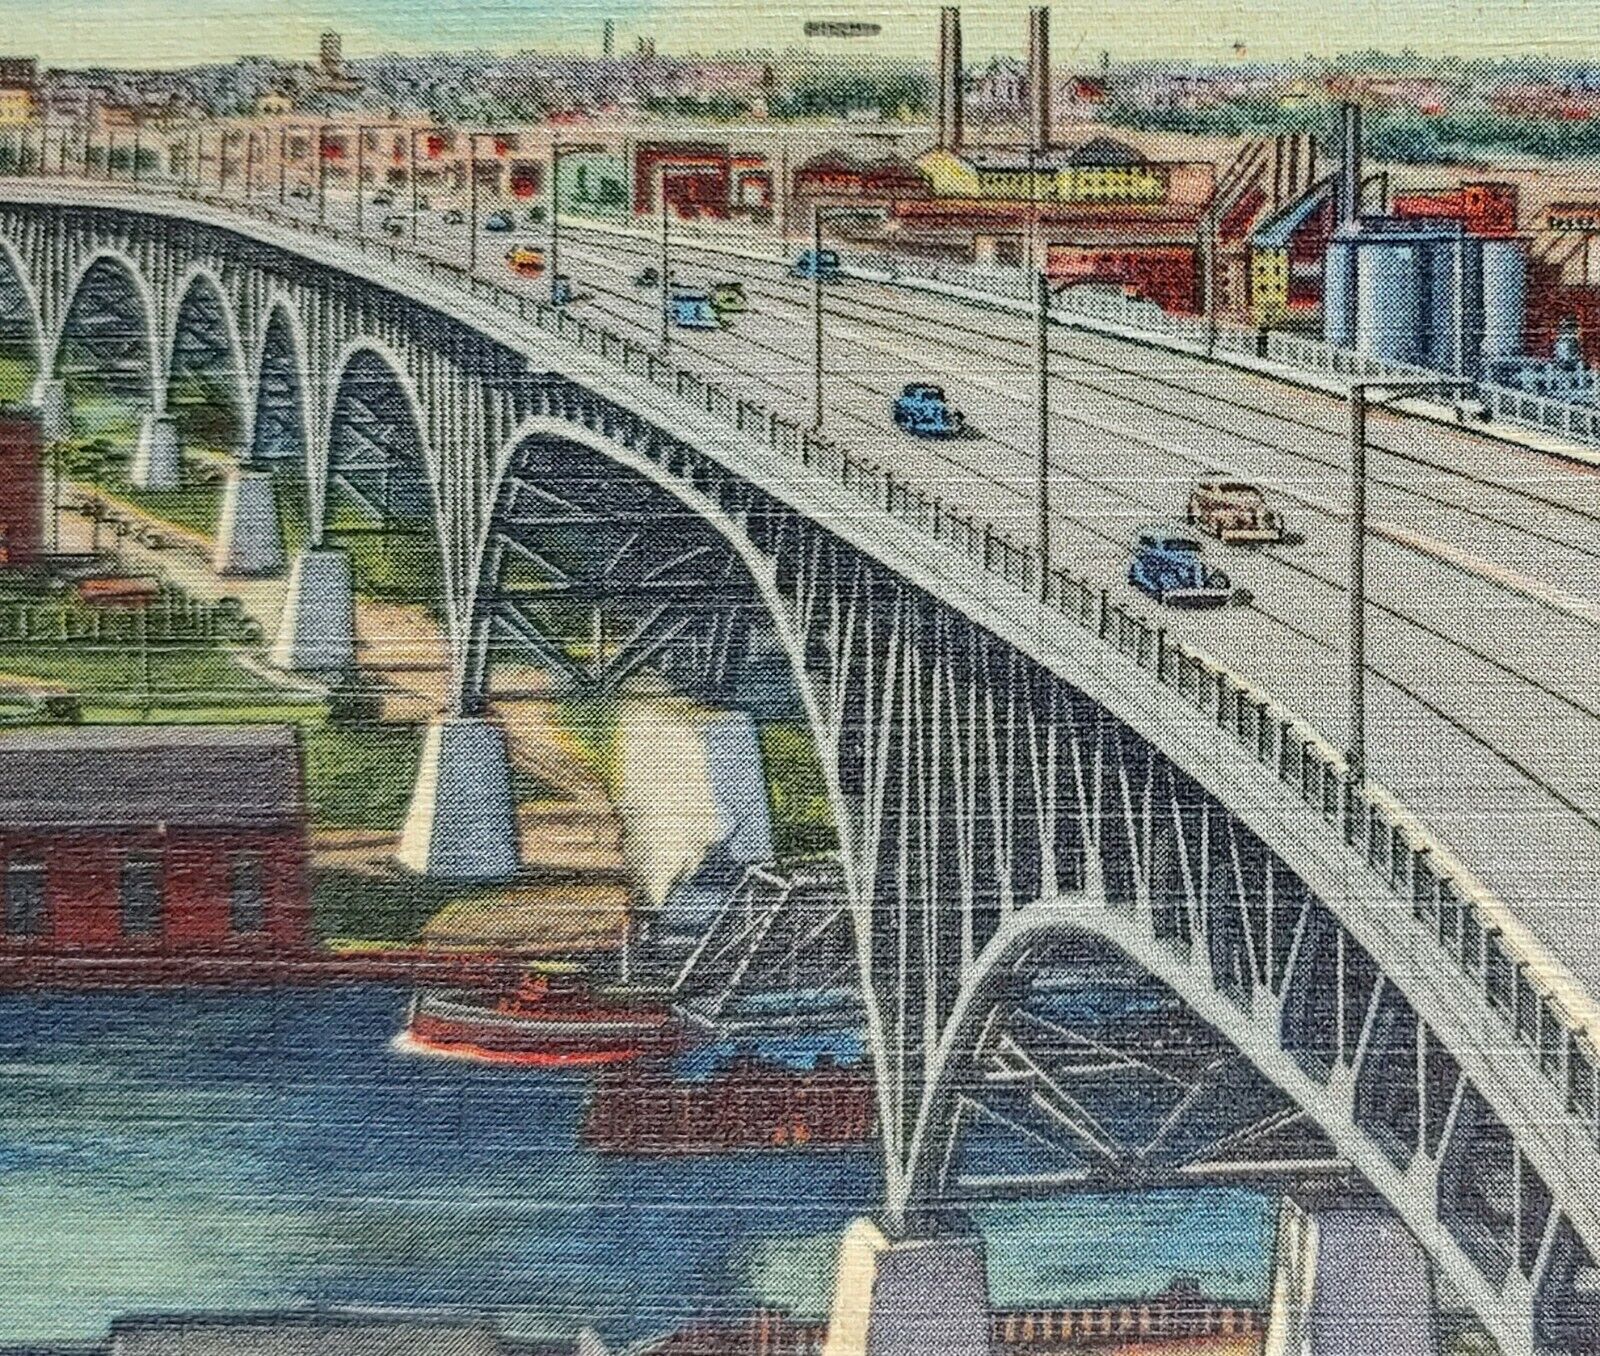 1957 Main Avenue Bridge Looking West Cleveland OH Vintage Linen Postcard Cars